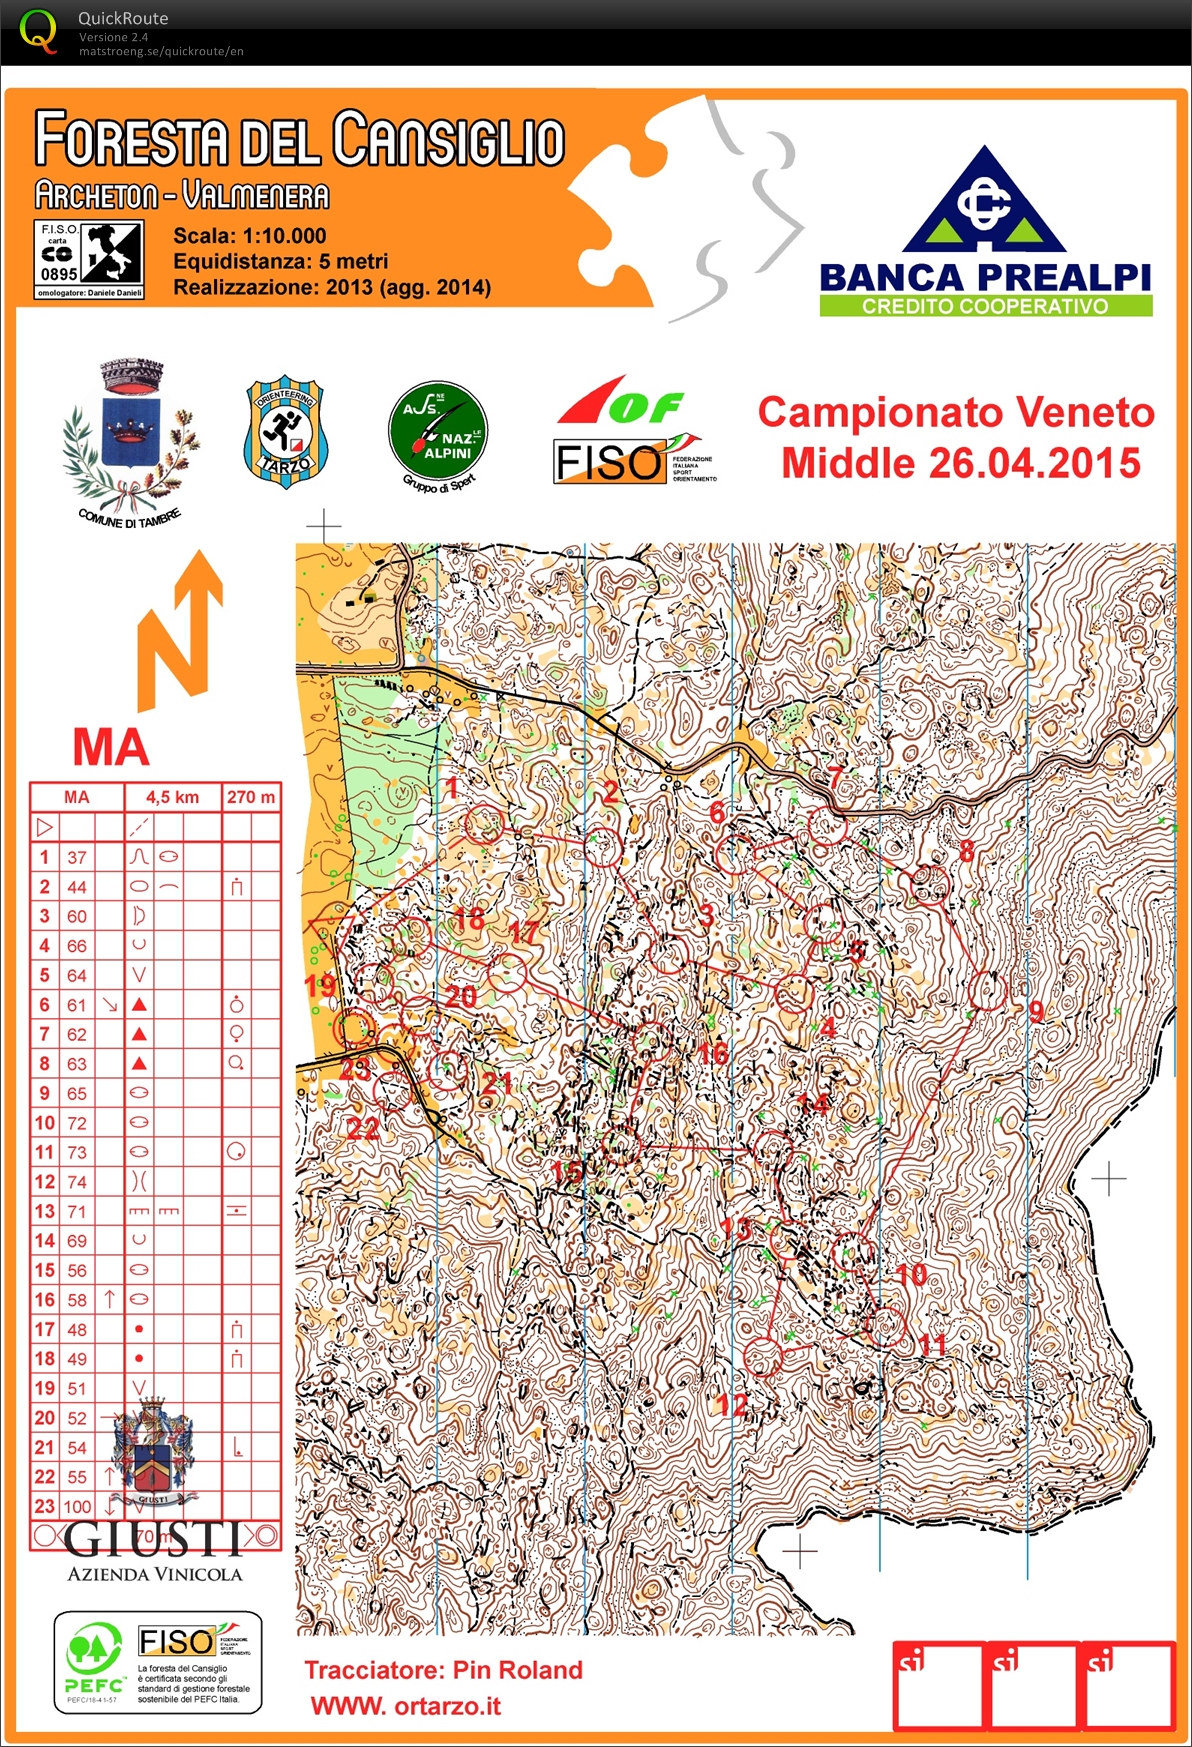 Campionato Veneto Middle 2015 (26/04/2015)